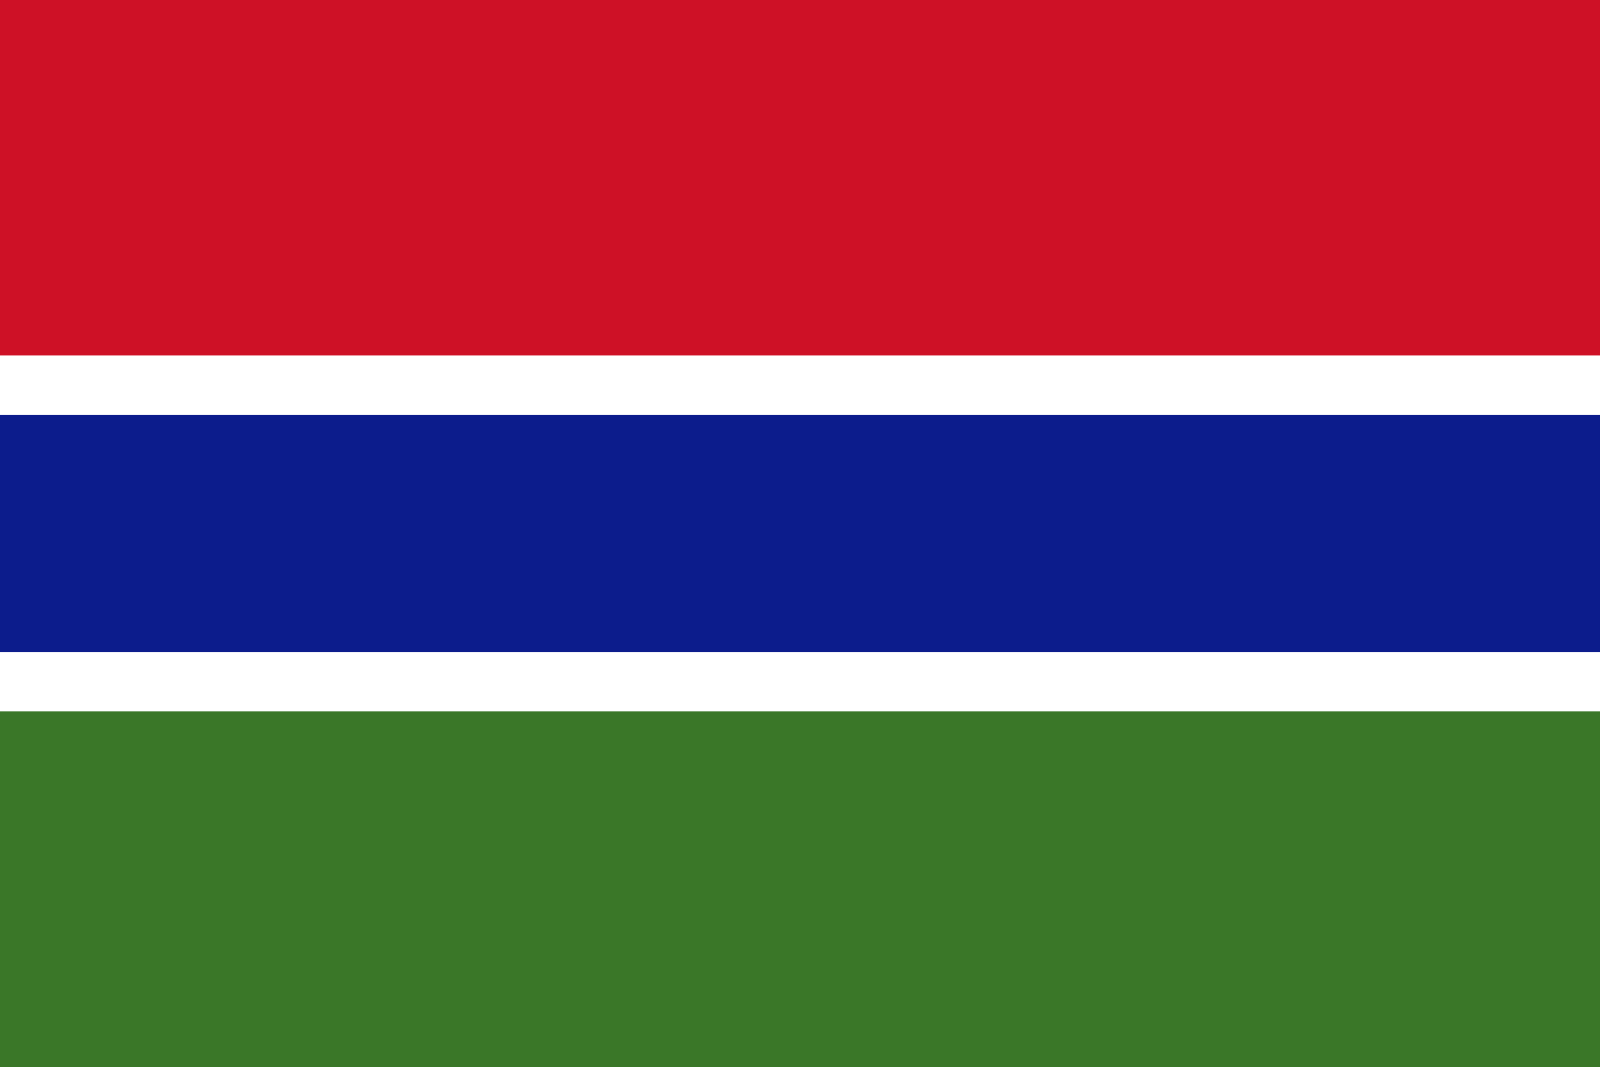 Bild der Staatsflagge Gambia - mit einer Auflösung von 1600x1067 - Afrika